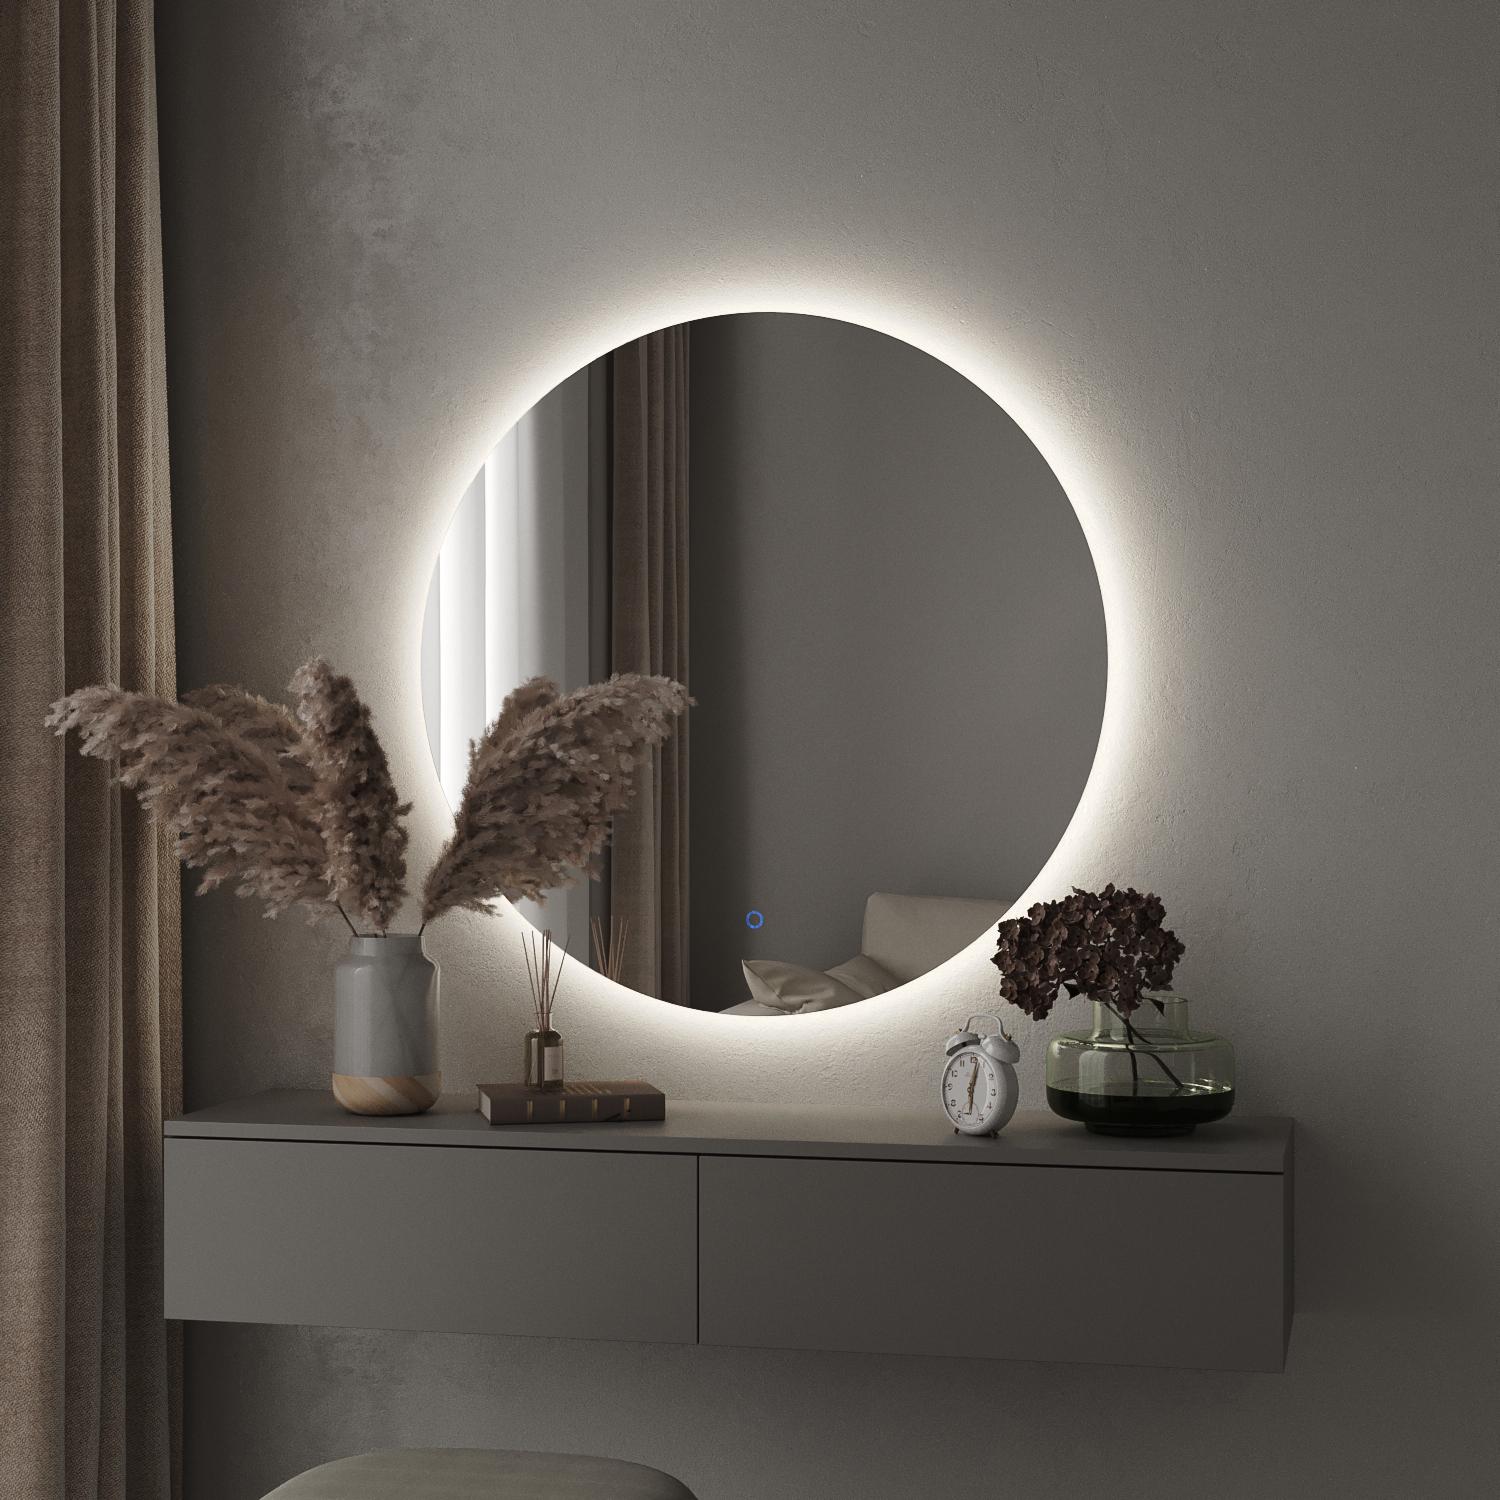 Зеркало со светодиодной LED (ЛЕД) подсветкой купить, цена зависит от размера